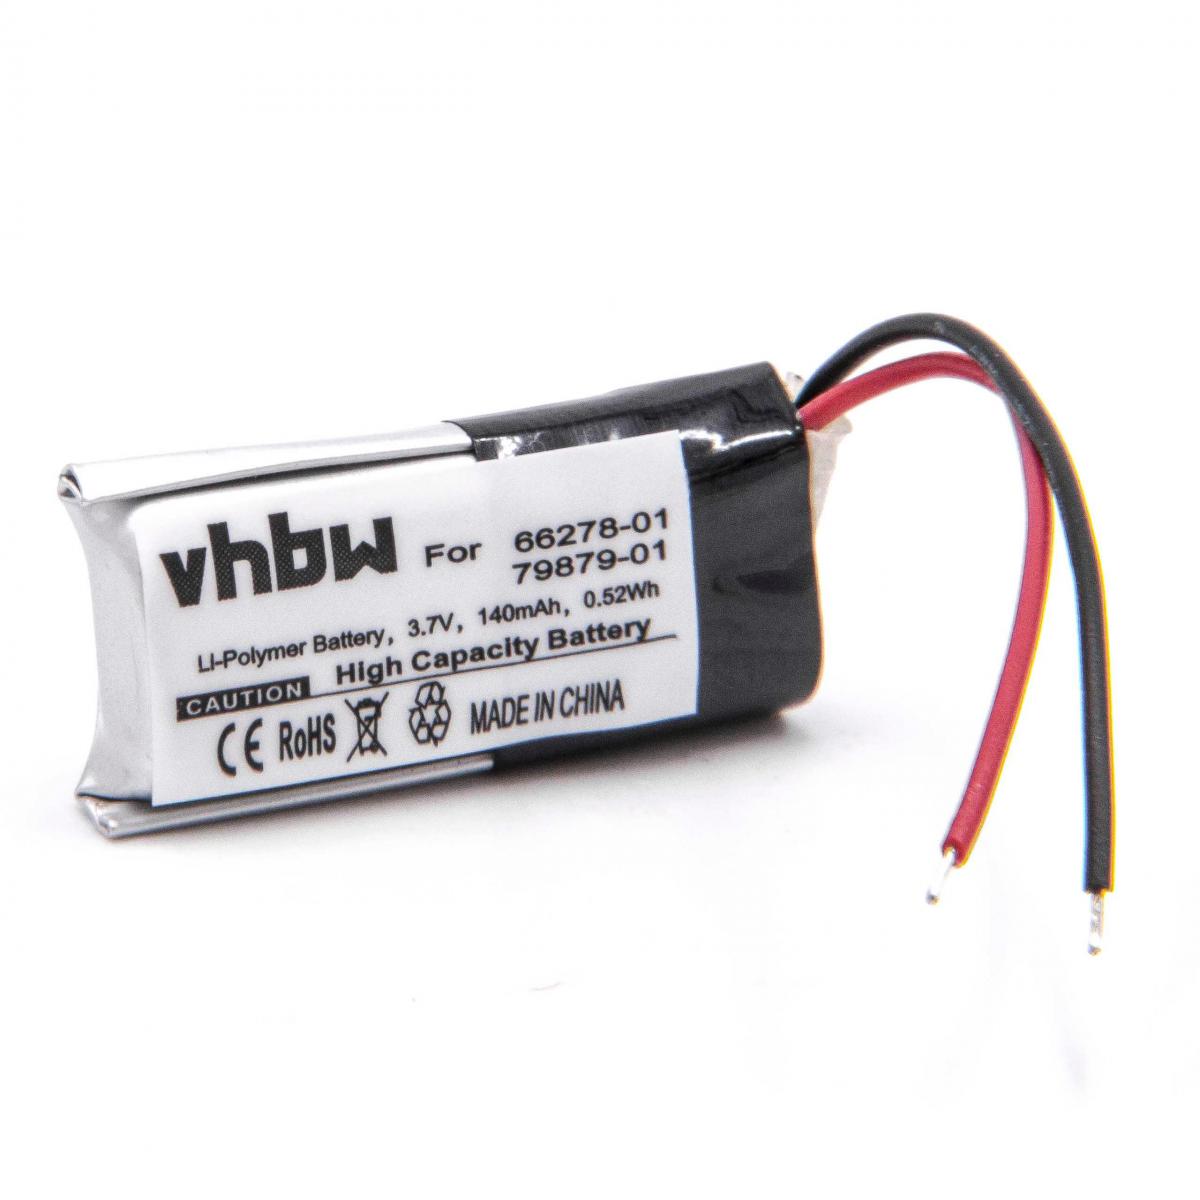 Vhbw - vhbw Li-Polymère batterie 140mAh (3.7V) pour casque écouteurs casque micro sans fil comme Plantronics 66278-01, 79879-01 - Batteries électroniques